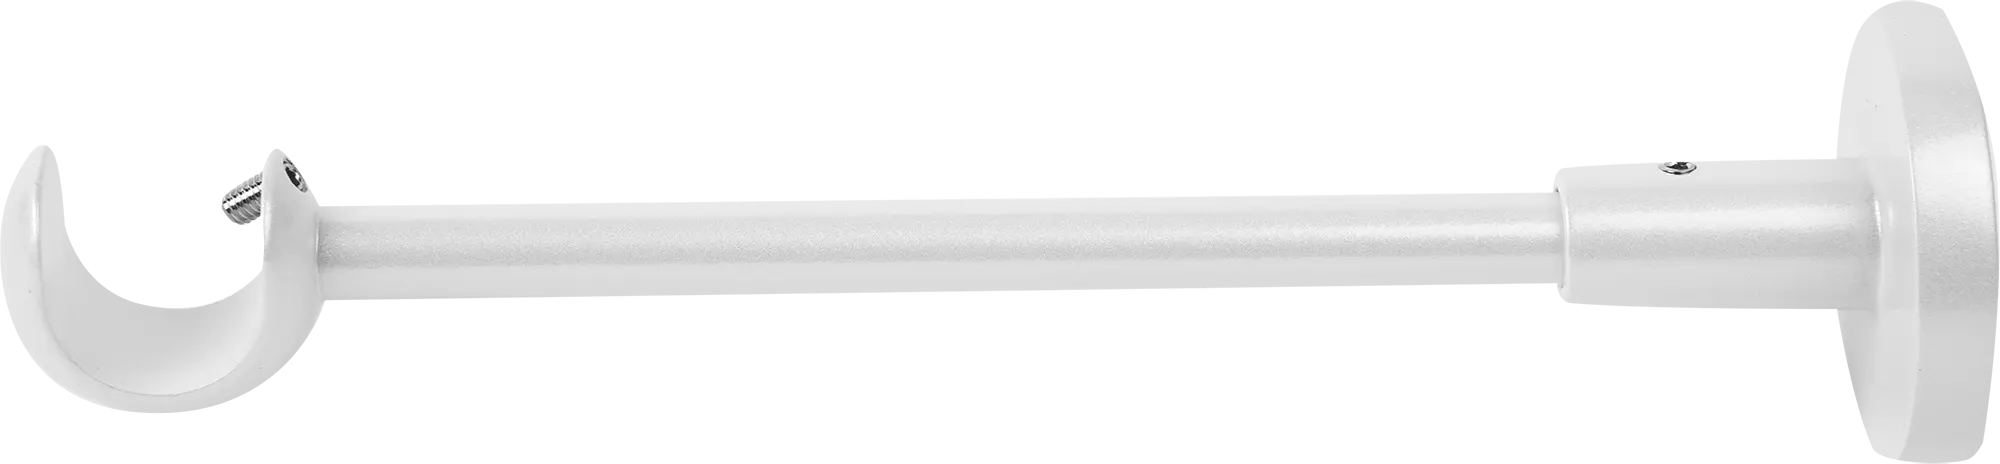 Держатель однорядный открытый 2 см цвет жемчуг держатель однорядный открытый 2 см жемчуг